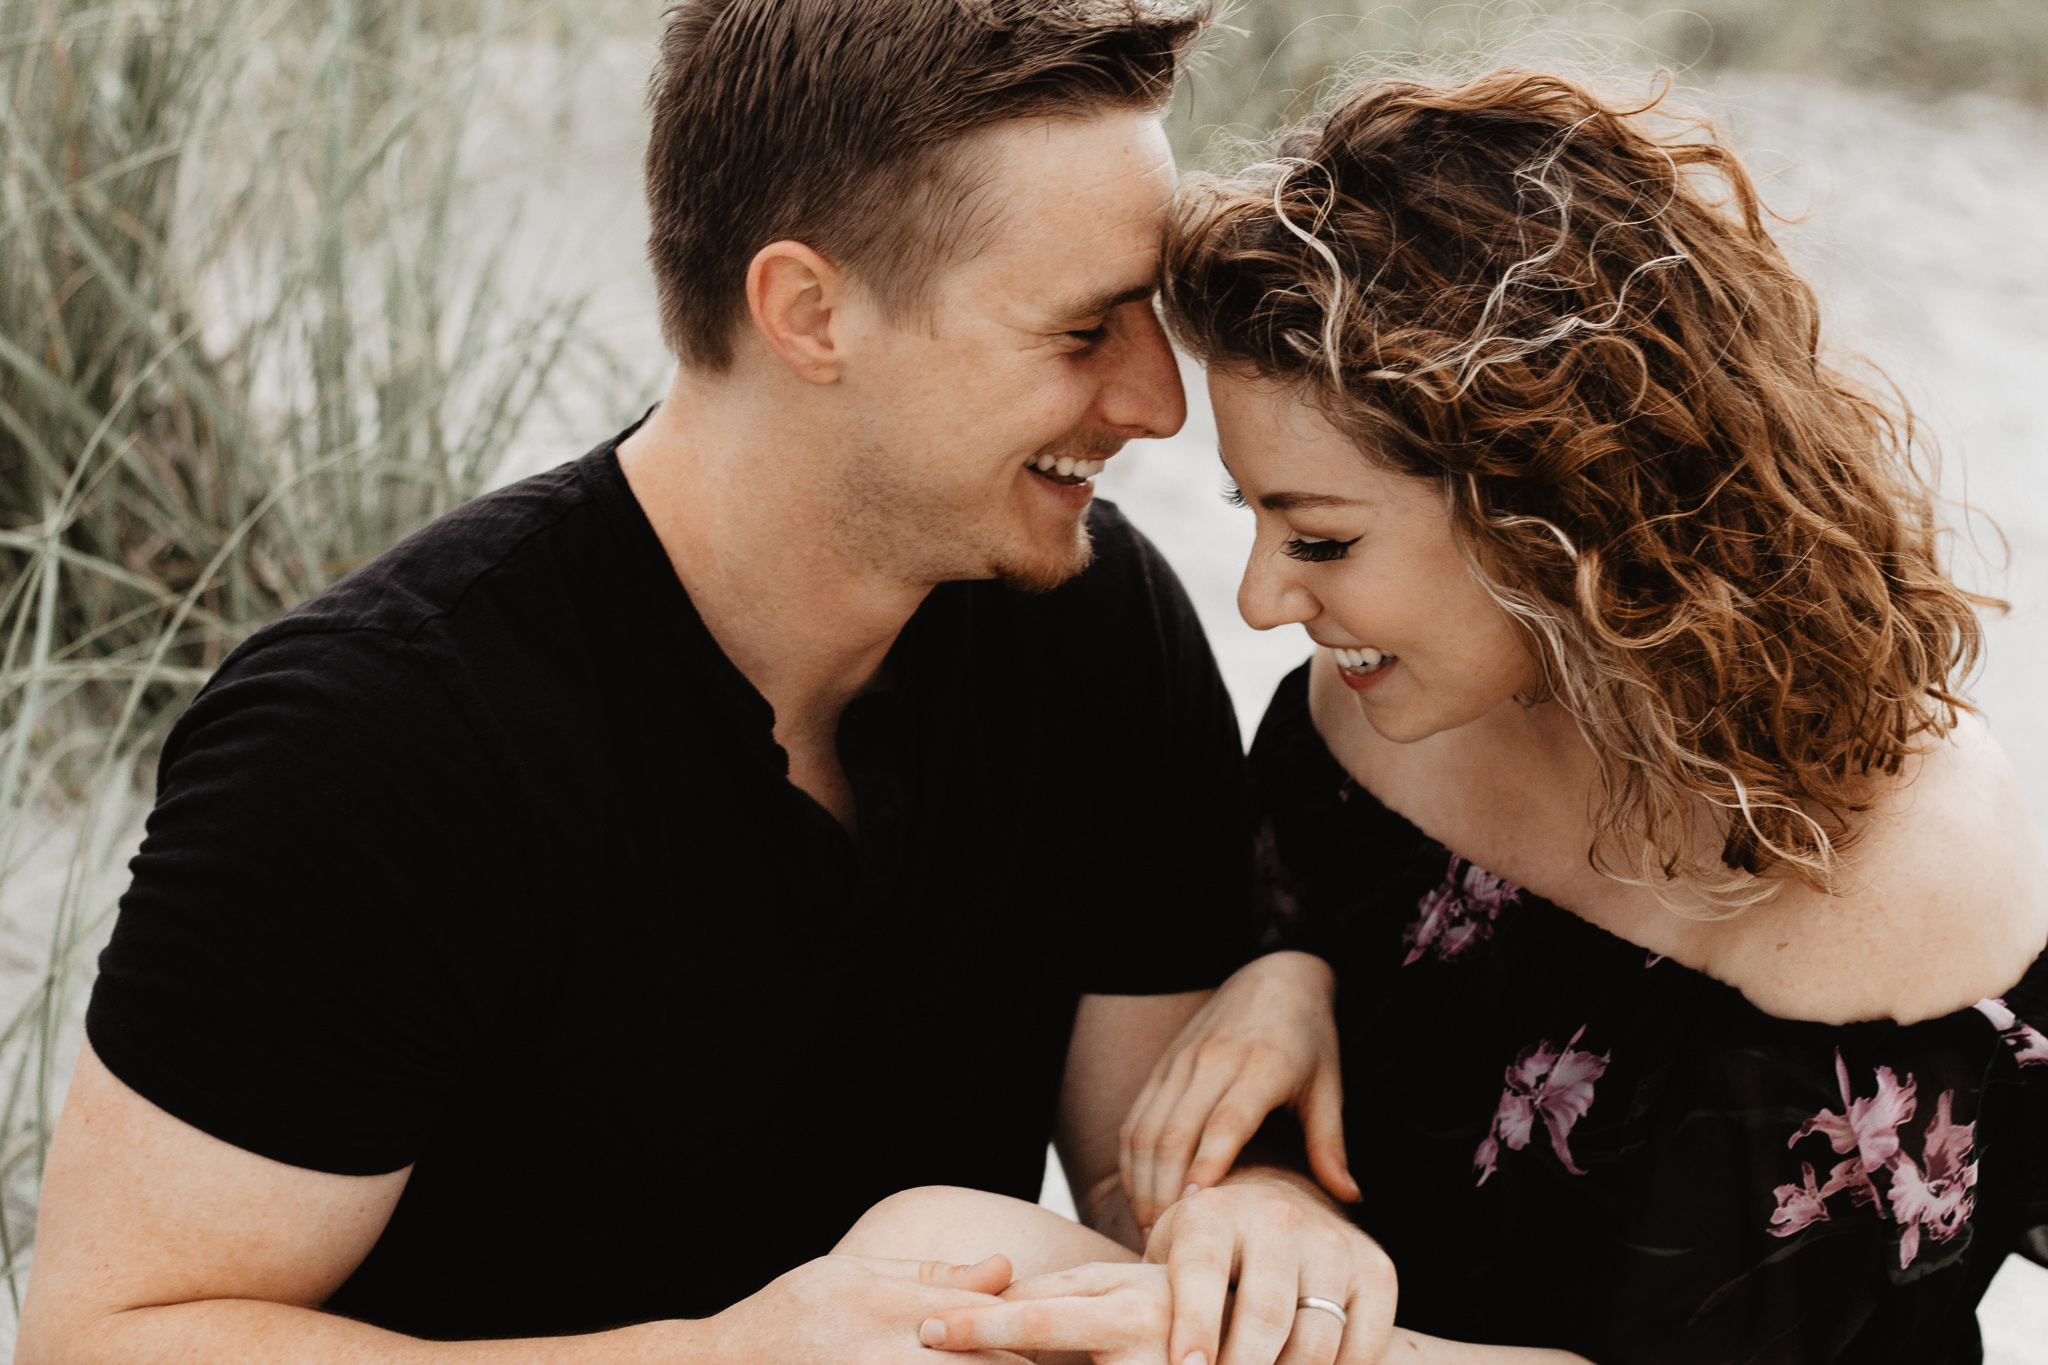 Kohl + Jen | Couples | Catherine Milliron Photography | Ohio Wedding Photographer